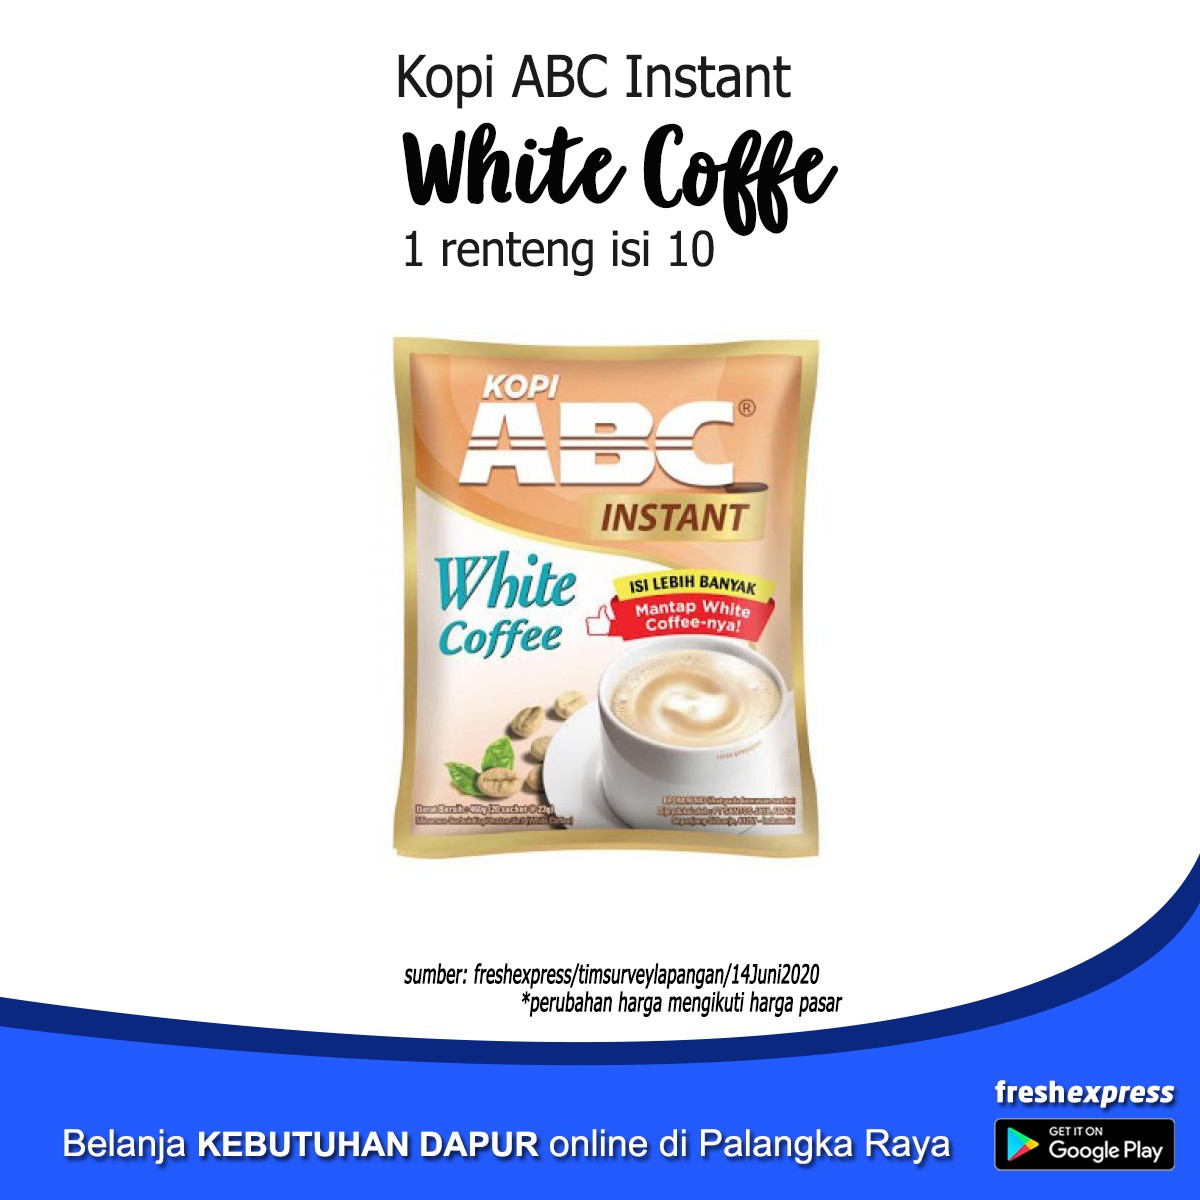 ABC White Coffee Isi 10